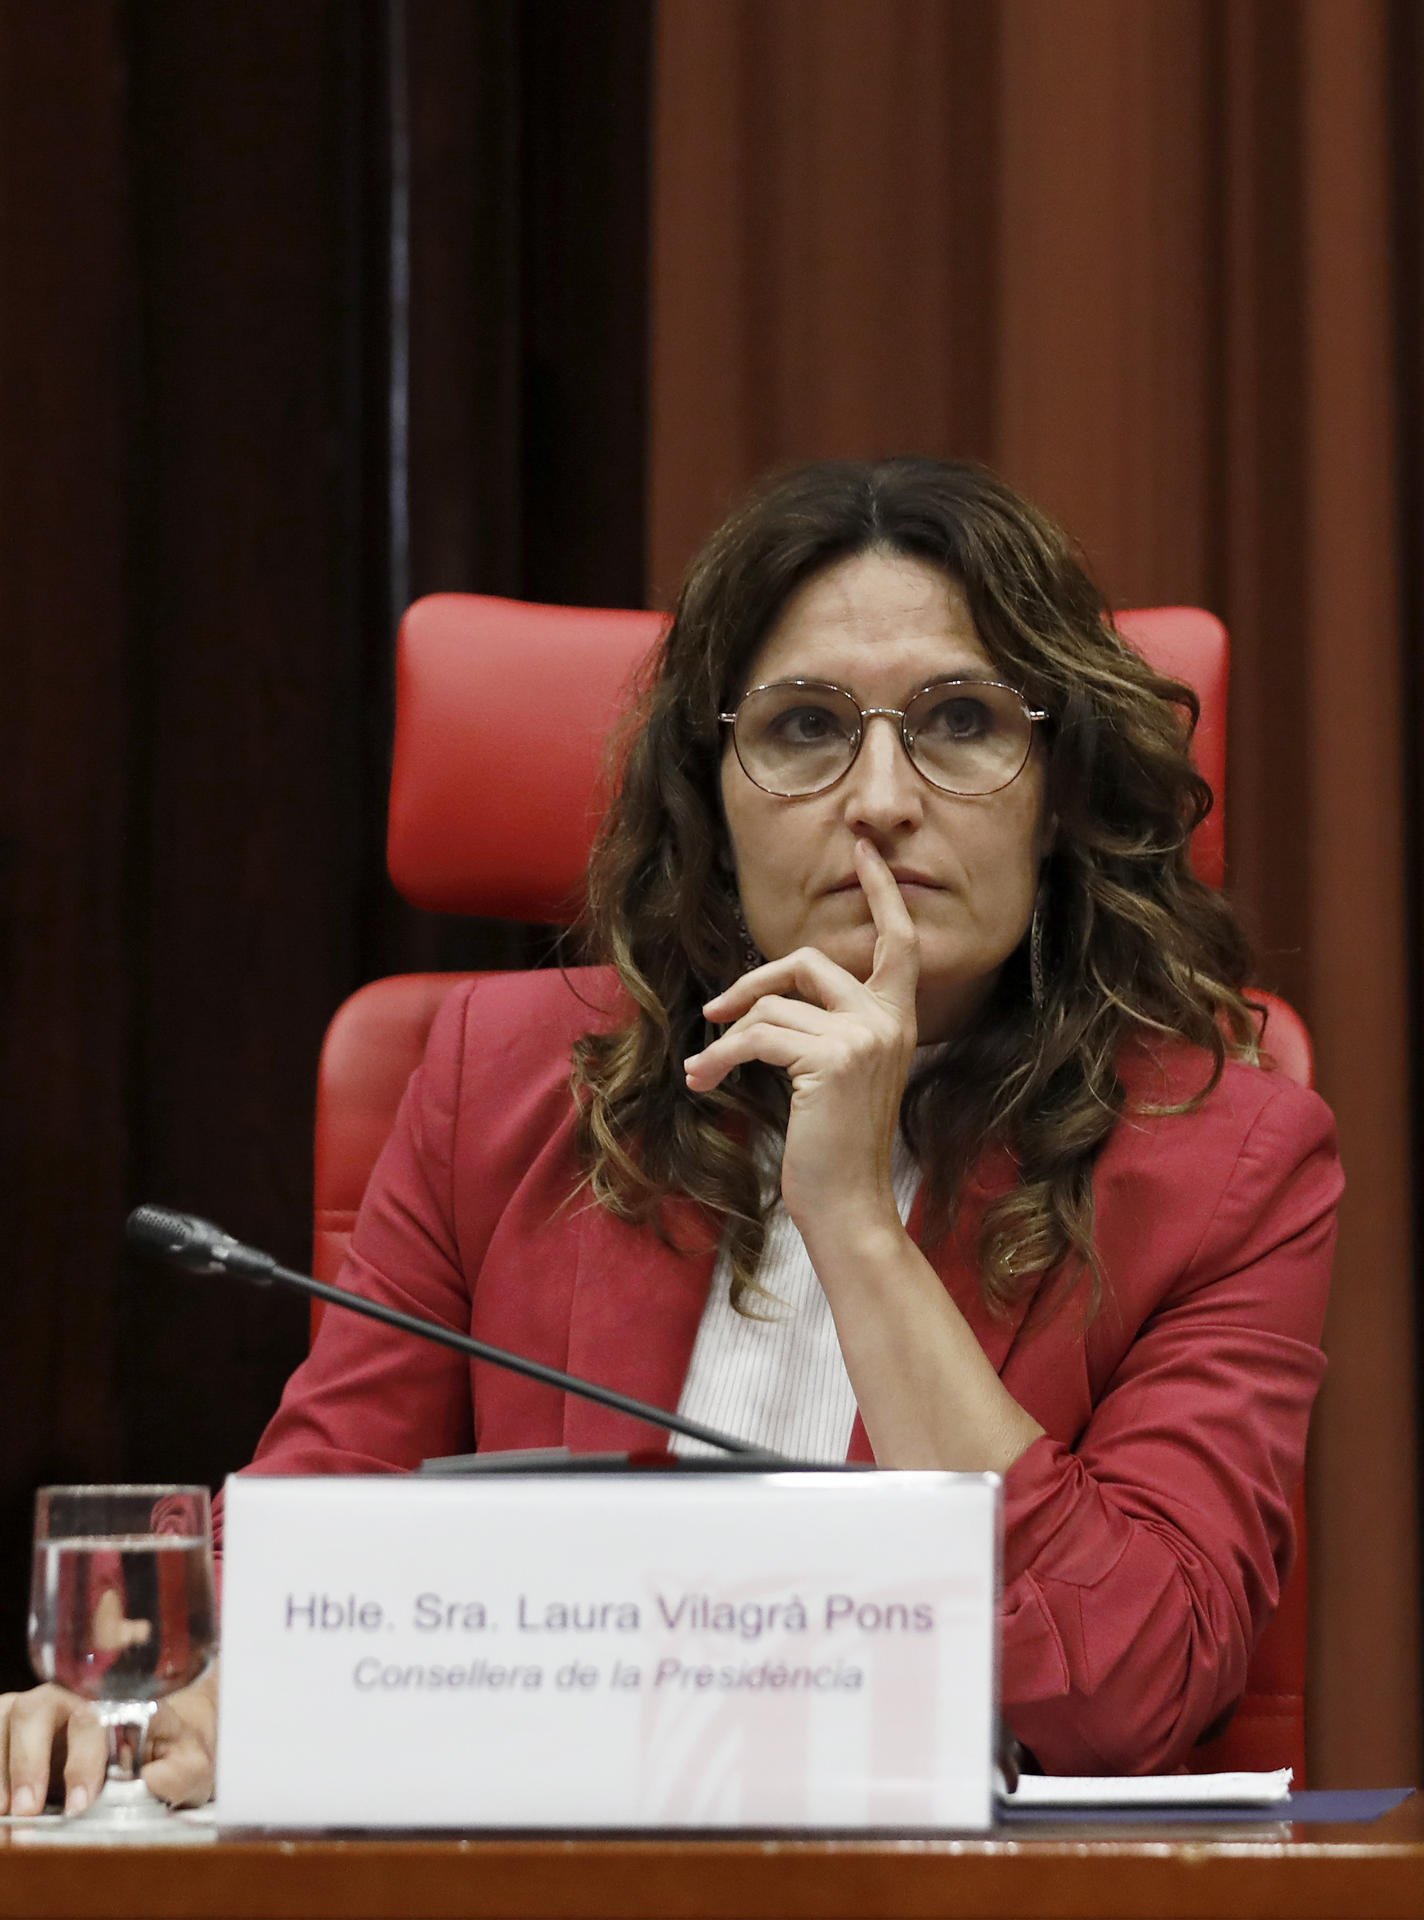 Vilagrà extingeix el contracte amb l'empresa a qui va cedir les oposicions, després del fiasco